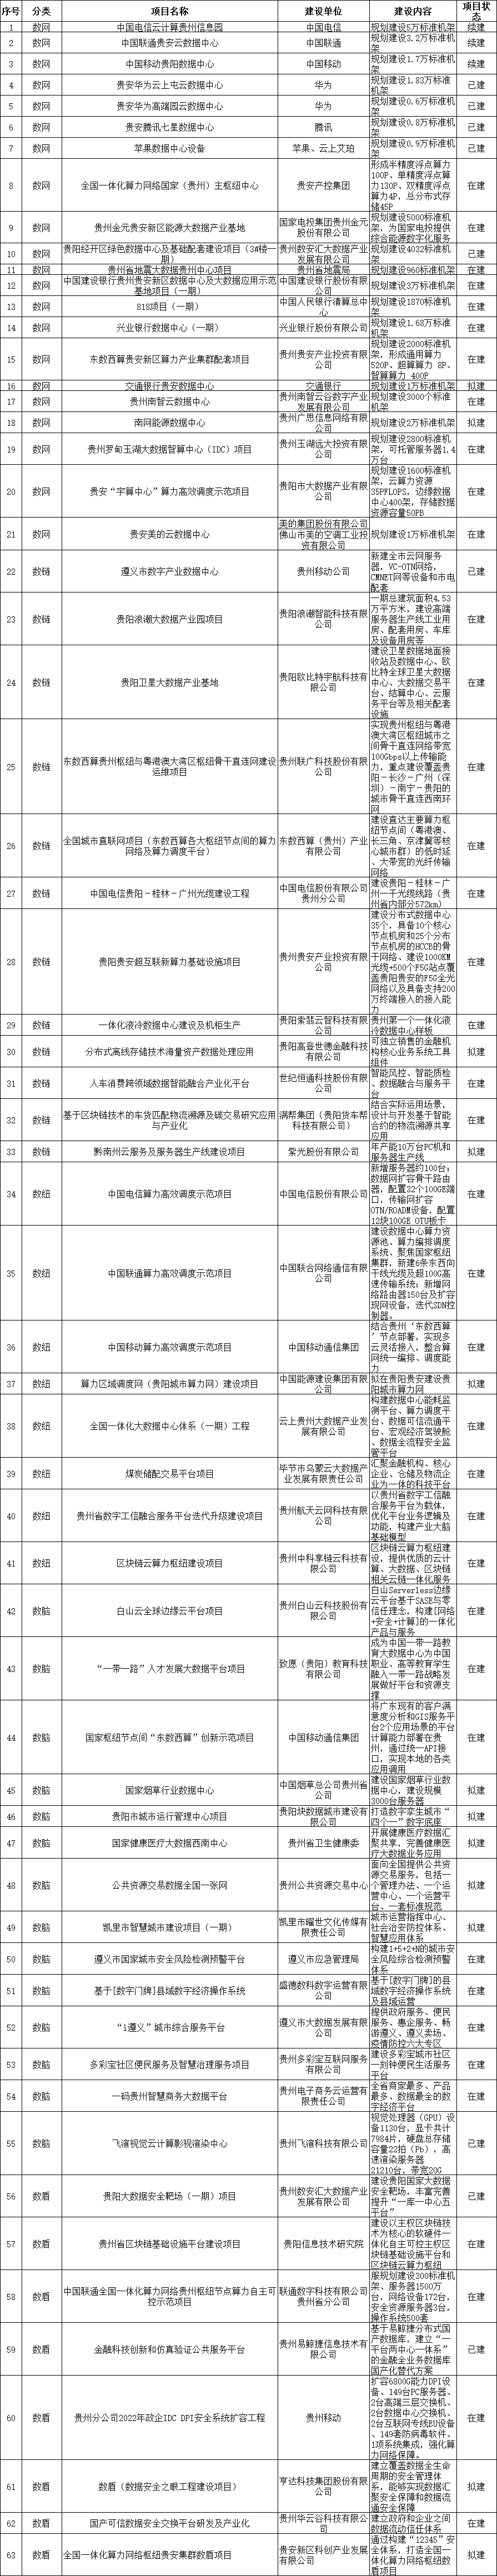 贵州省大数据局印发面向全国的算力保障基地建设规划